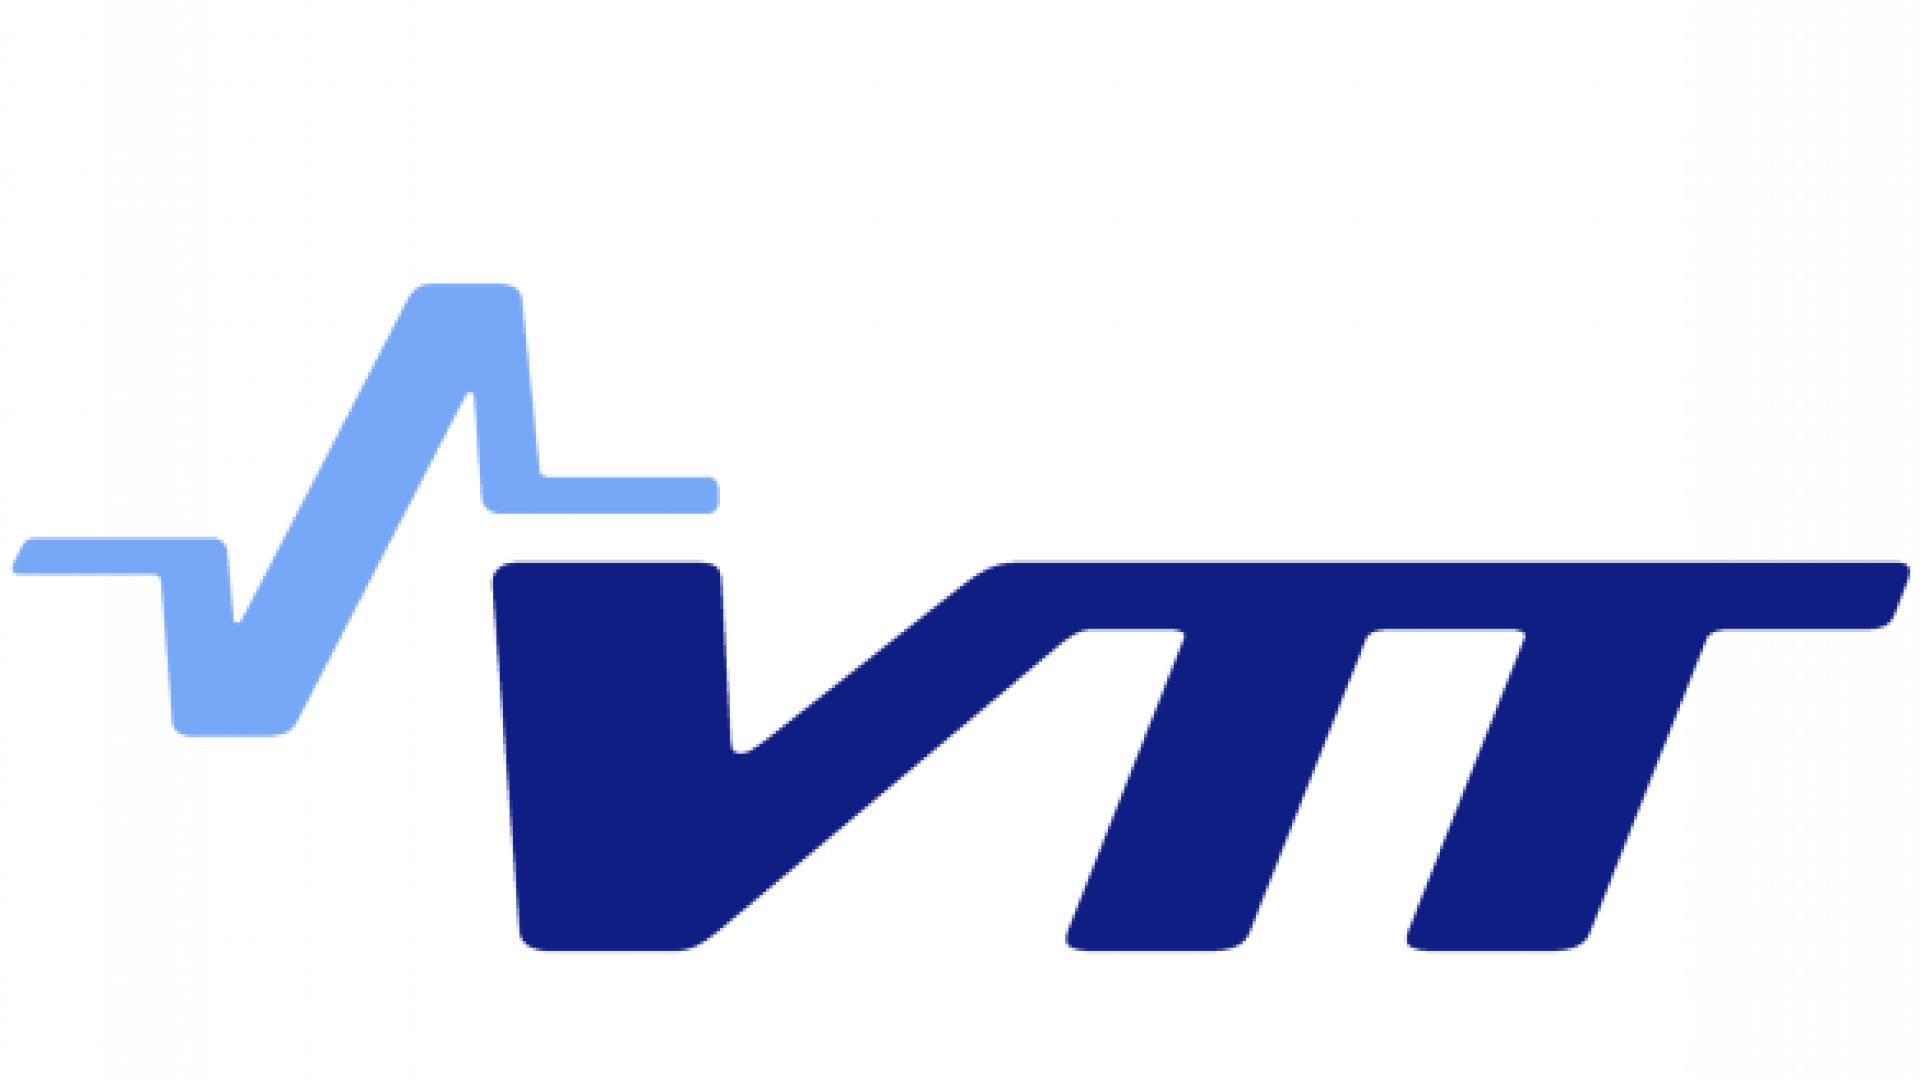 VTT Technical Research Center of Finland